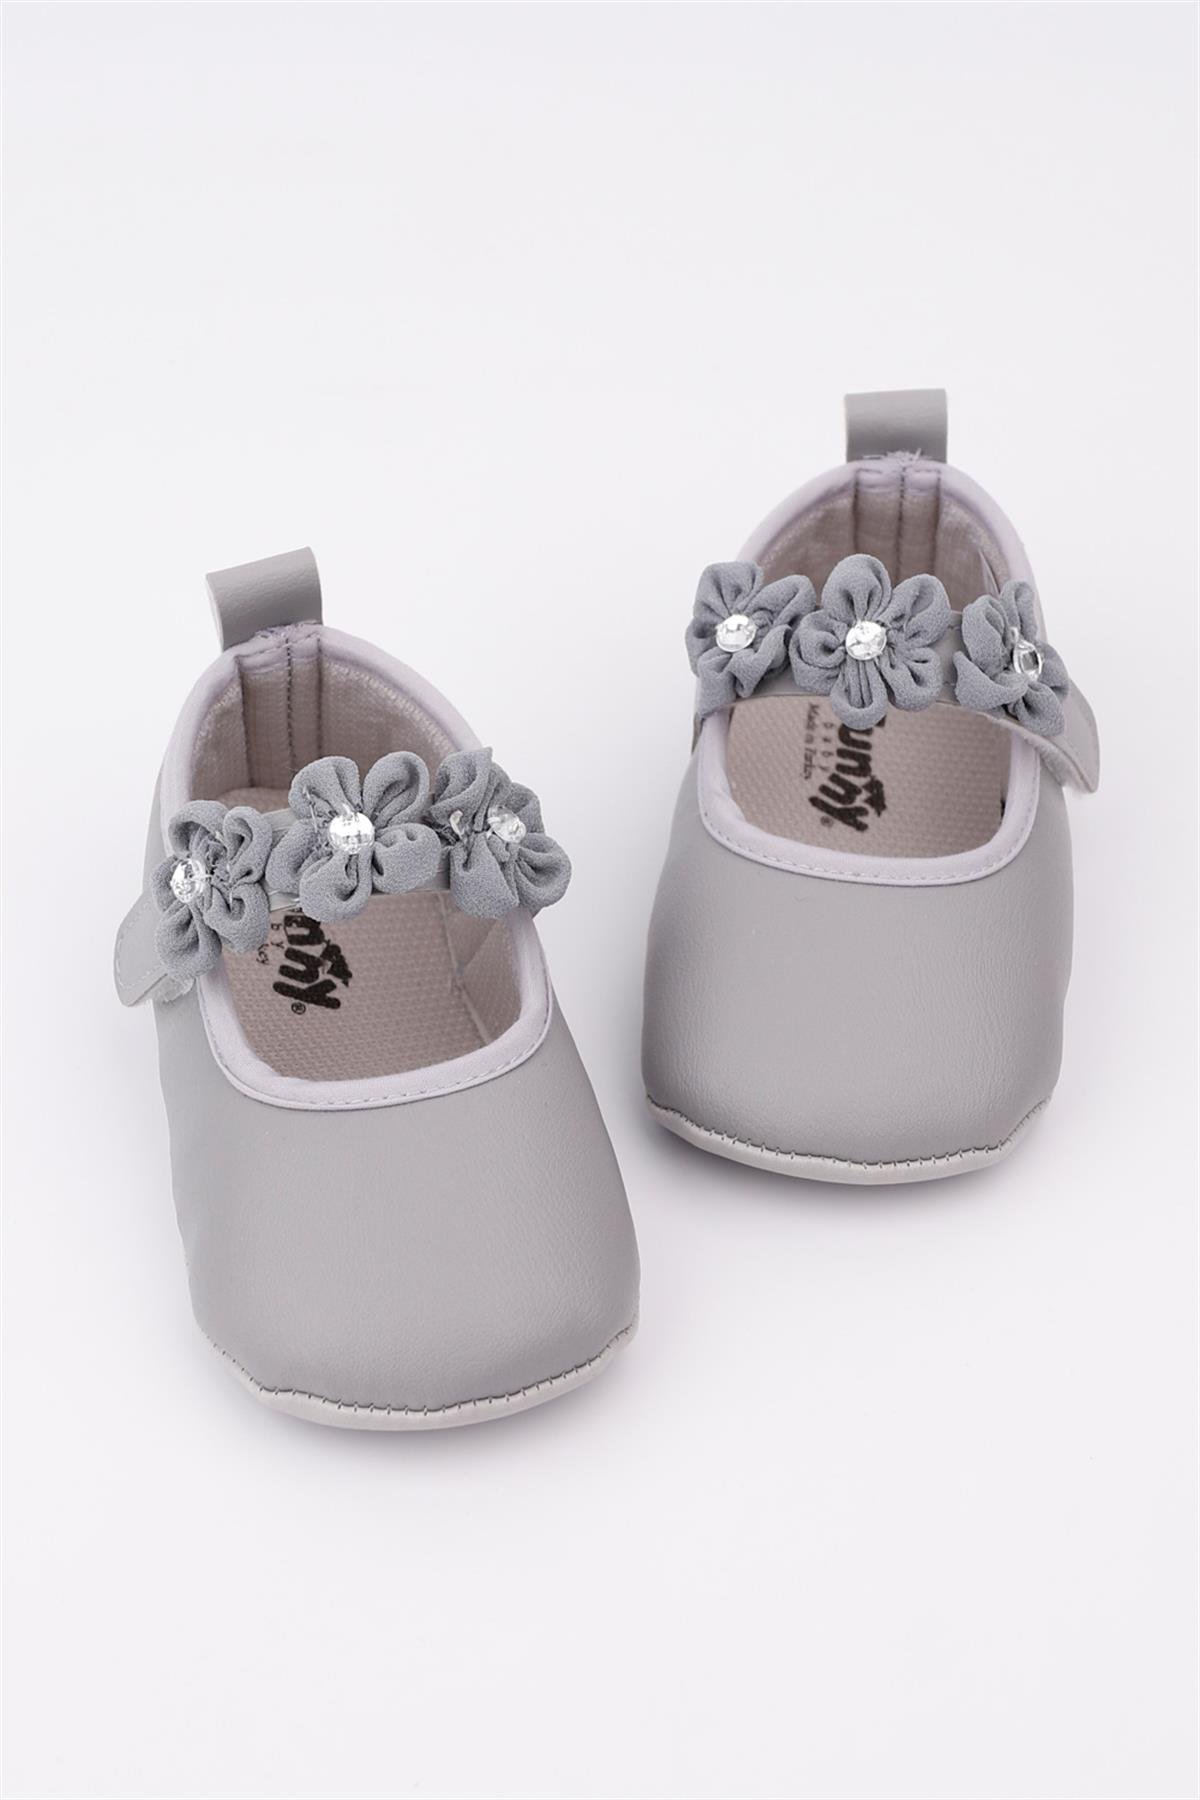 Gri Çiçekli Taşlı Kız Bebek AyakkabıLM1203 | Le Mabelle